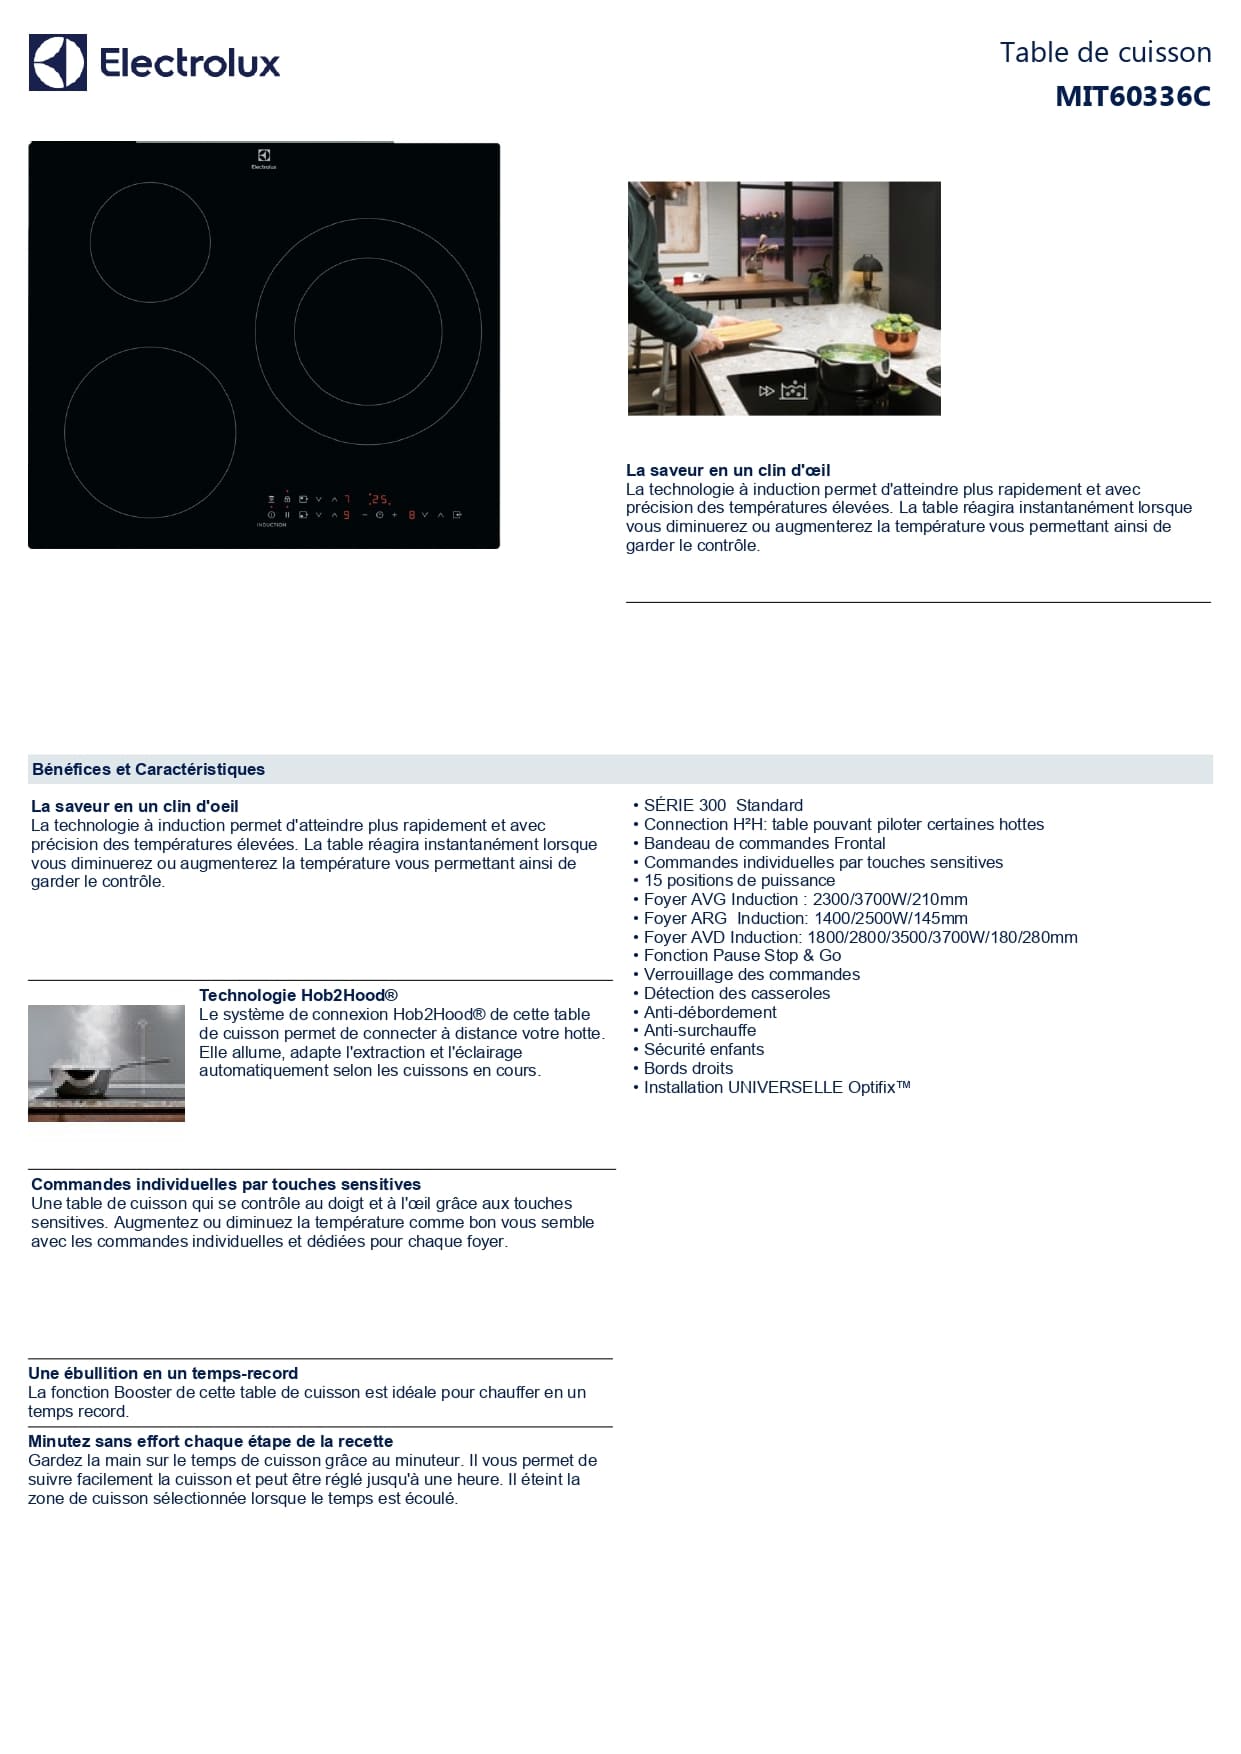 Plaque induction Electrolux - Concept Achat - MIT60336C